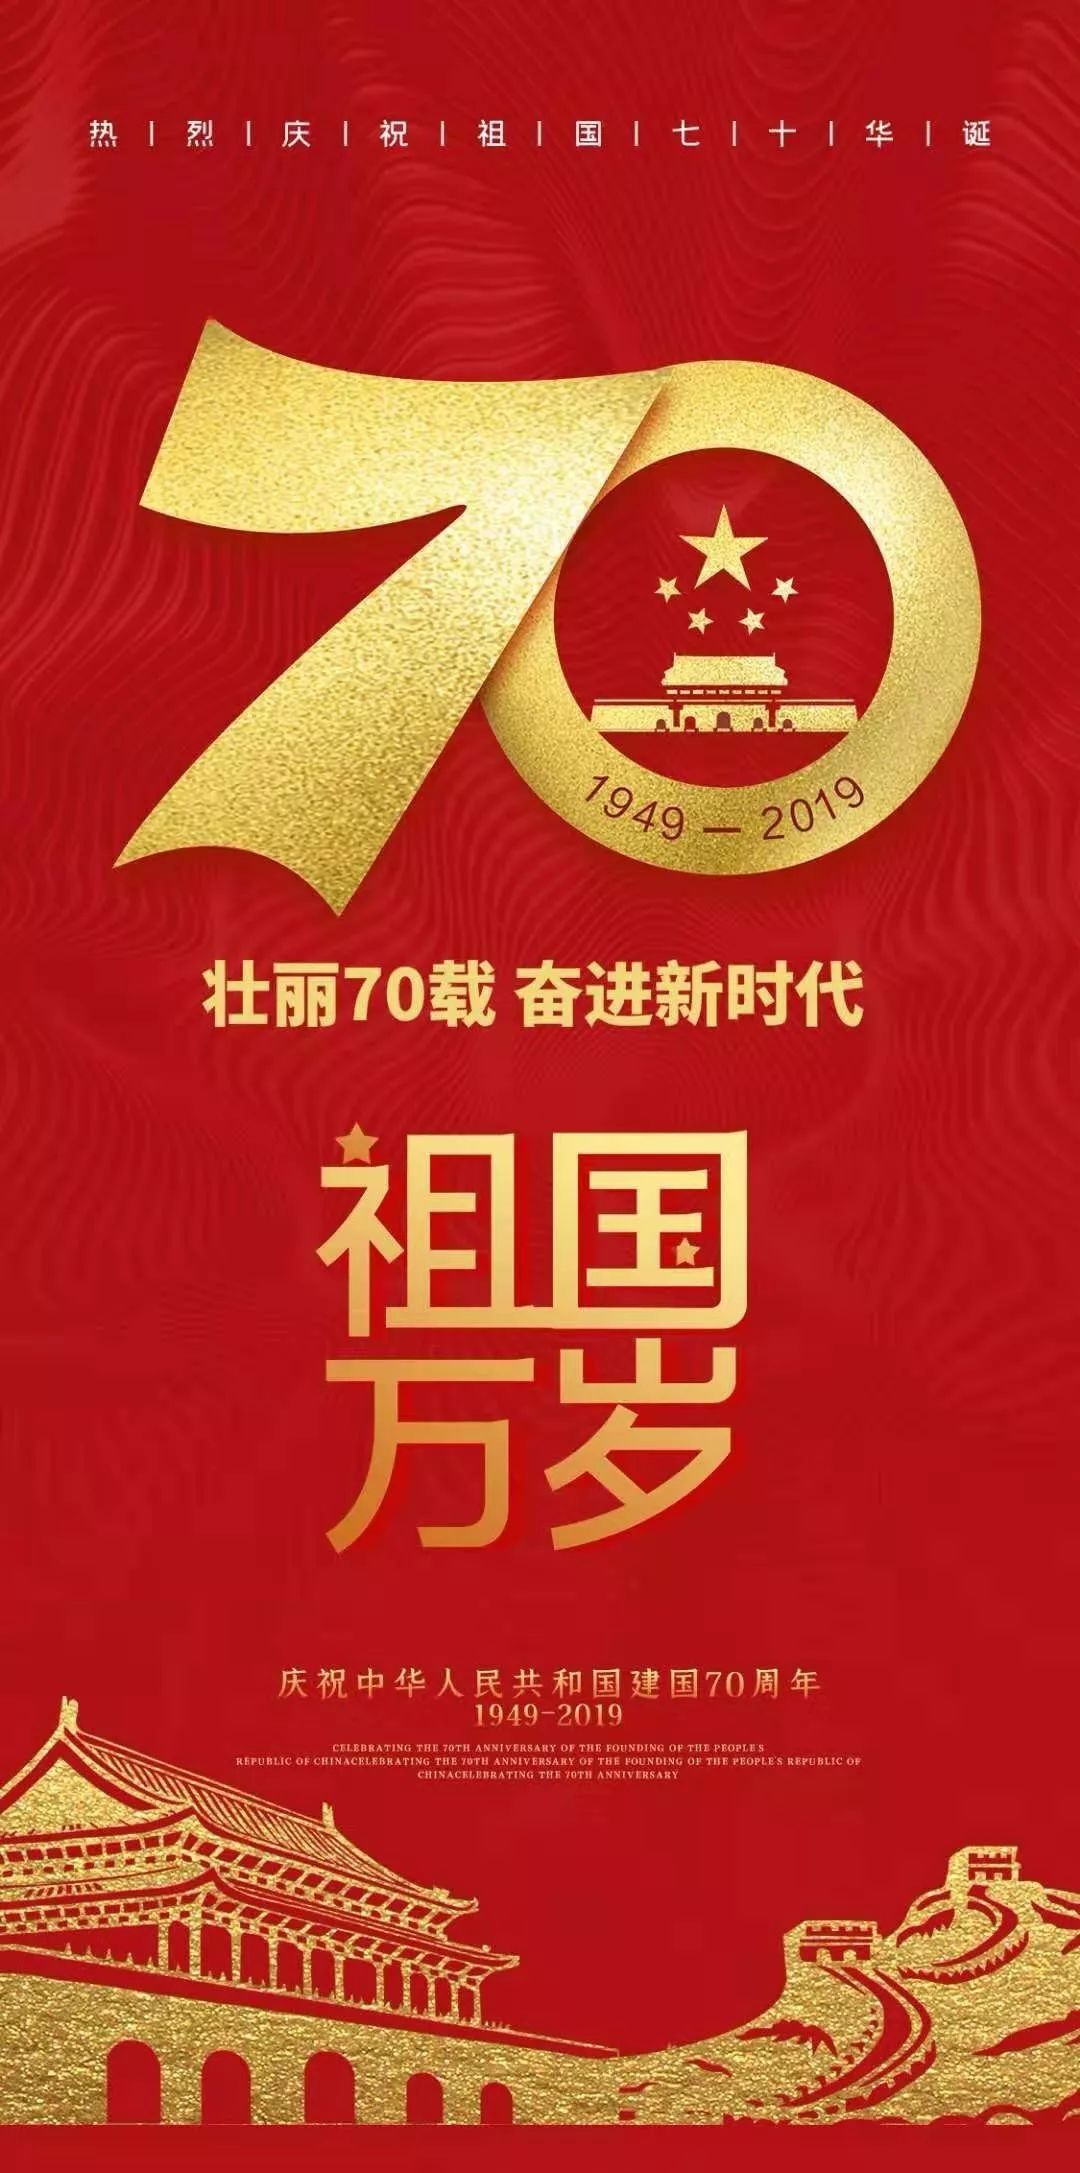 向伟大的复兴前进热烈庆祝中华人民共和国成立70周年